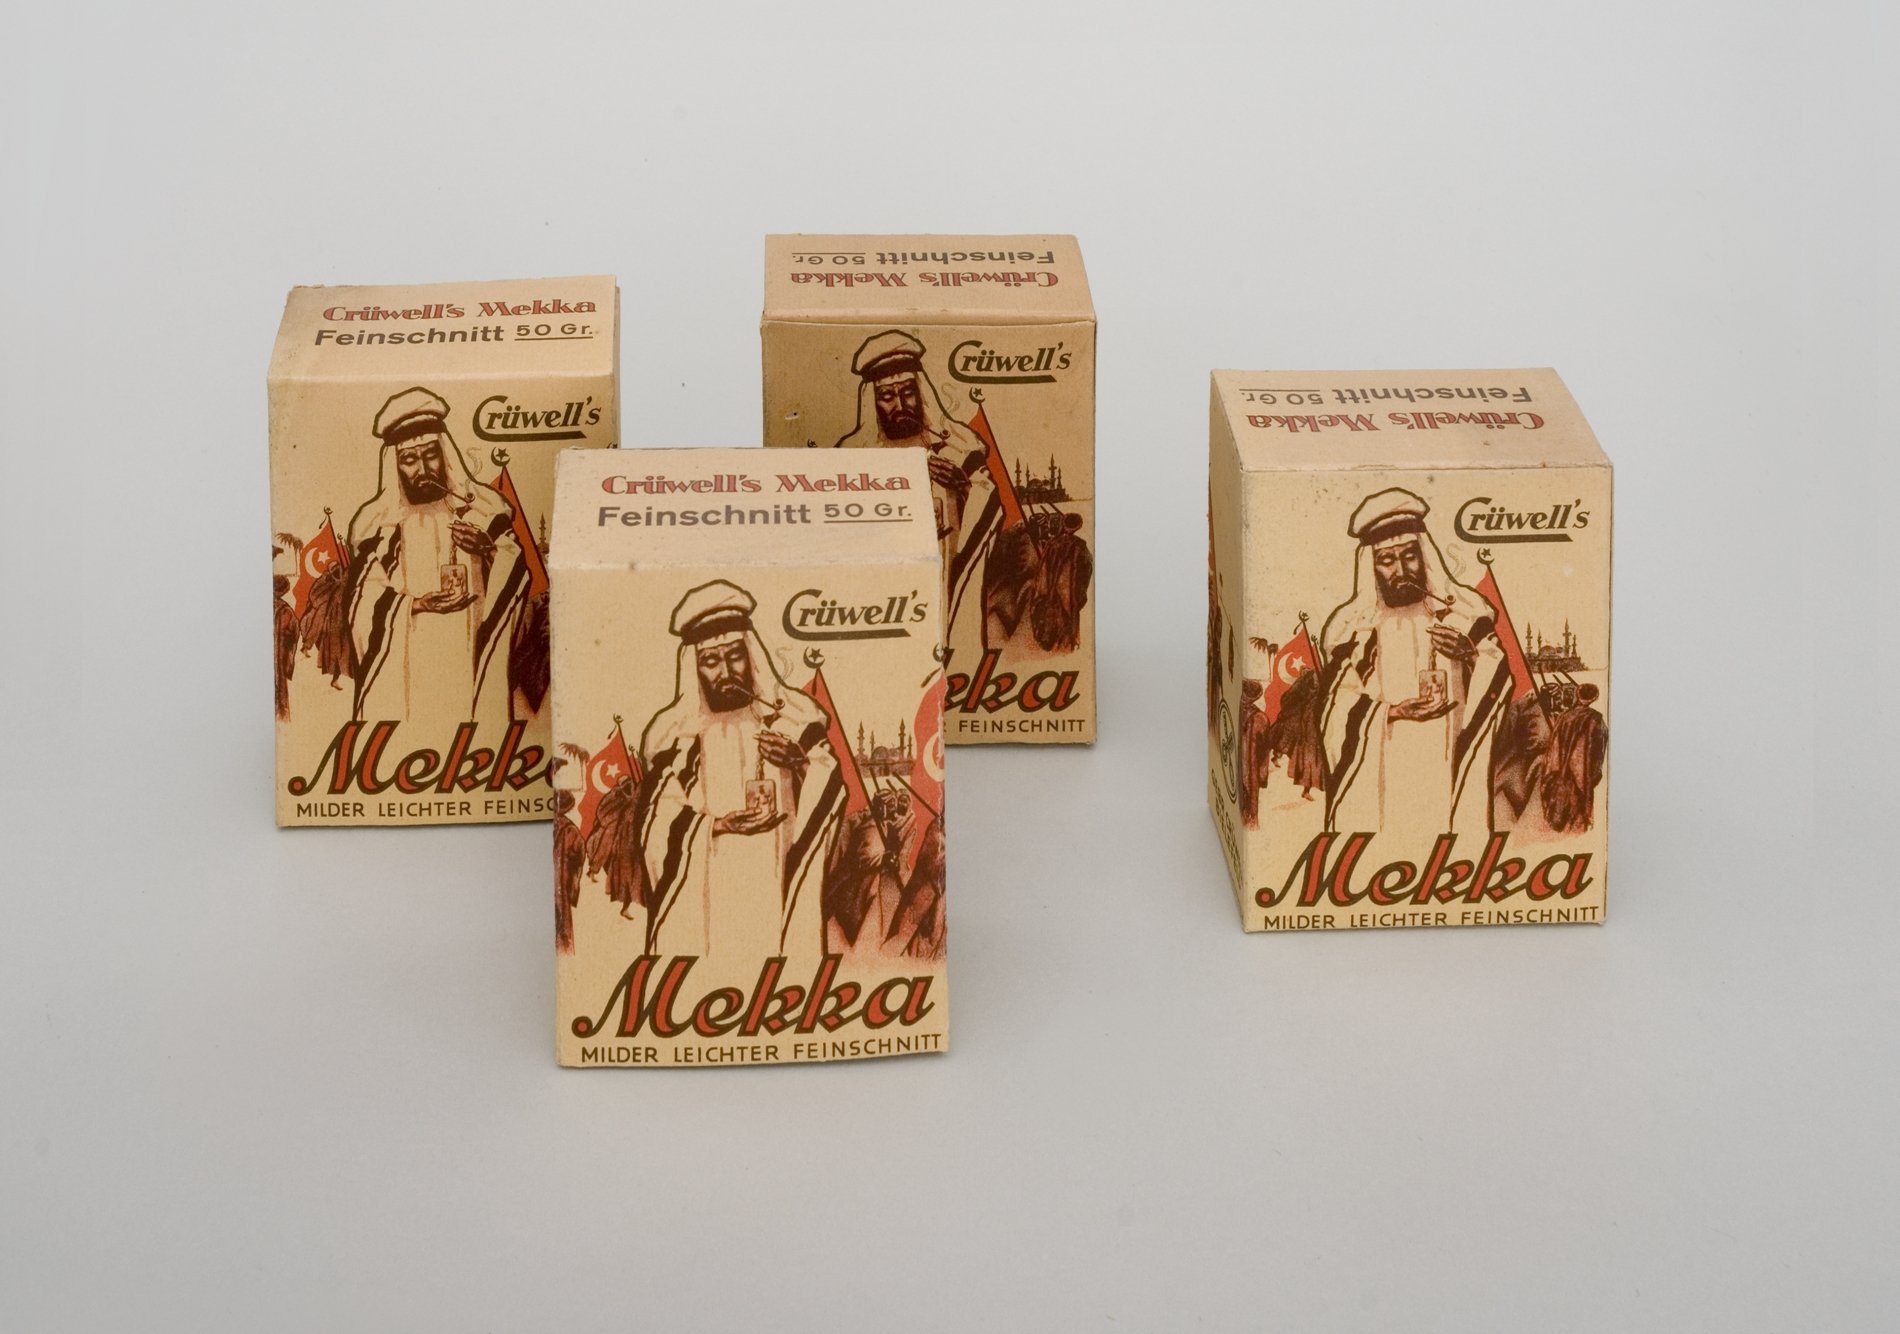 Vier Packungen "Crüwell's Mekka - milder leichter Feinschnitt" (Stiftung Domäne Dahlem - Landgut und Museum, Weiternutzung nur mit Genehmigung des Museums CC BY-NC-SA)